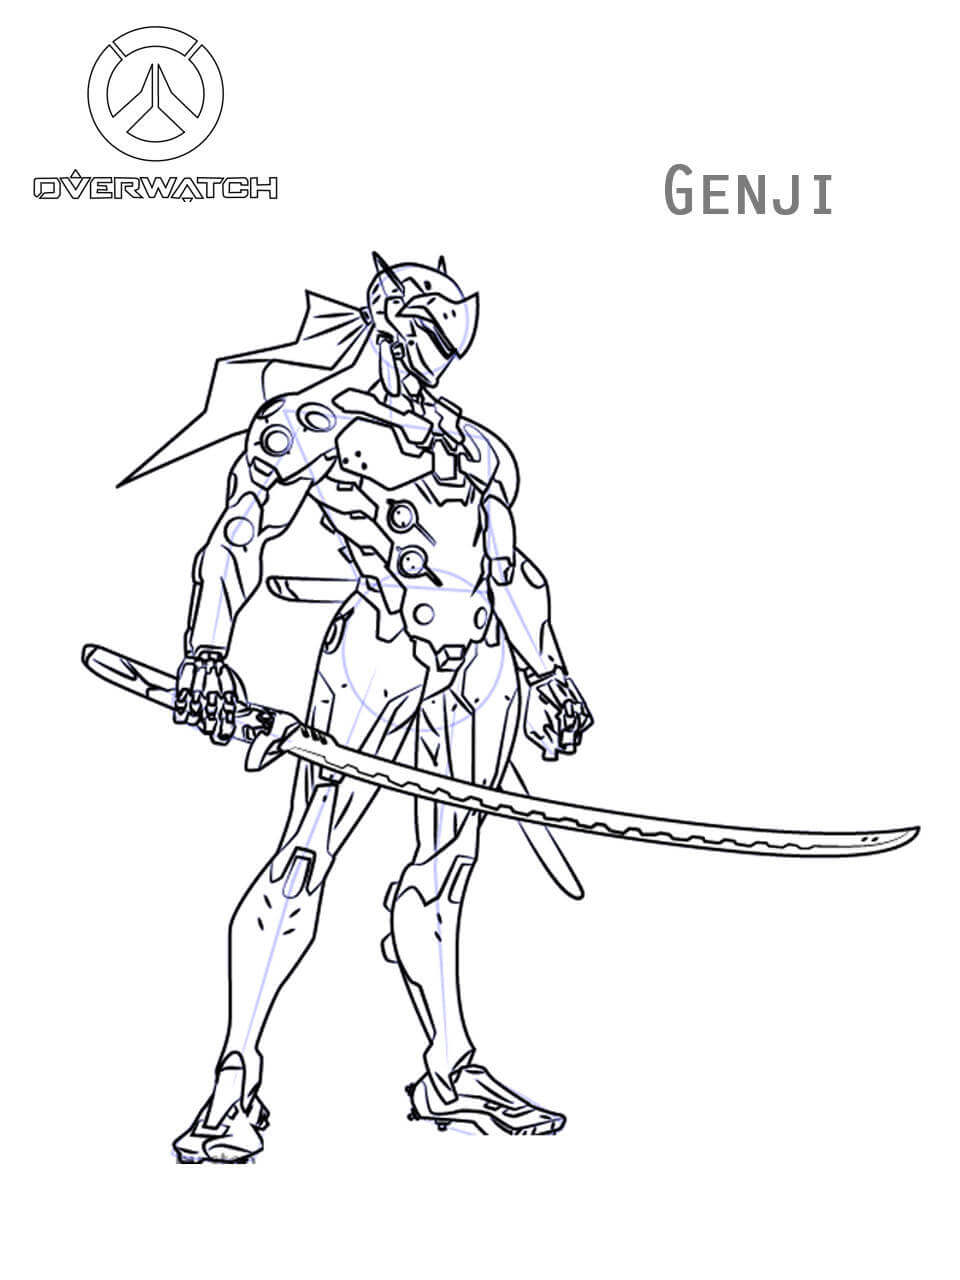 Genji Genial